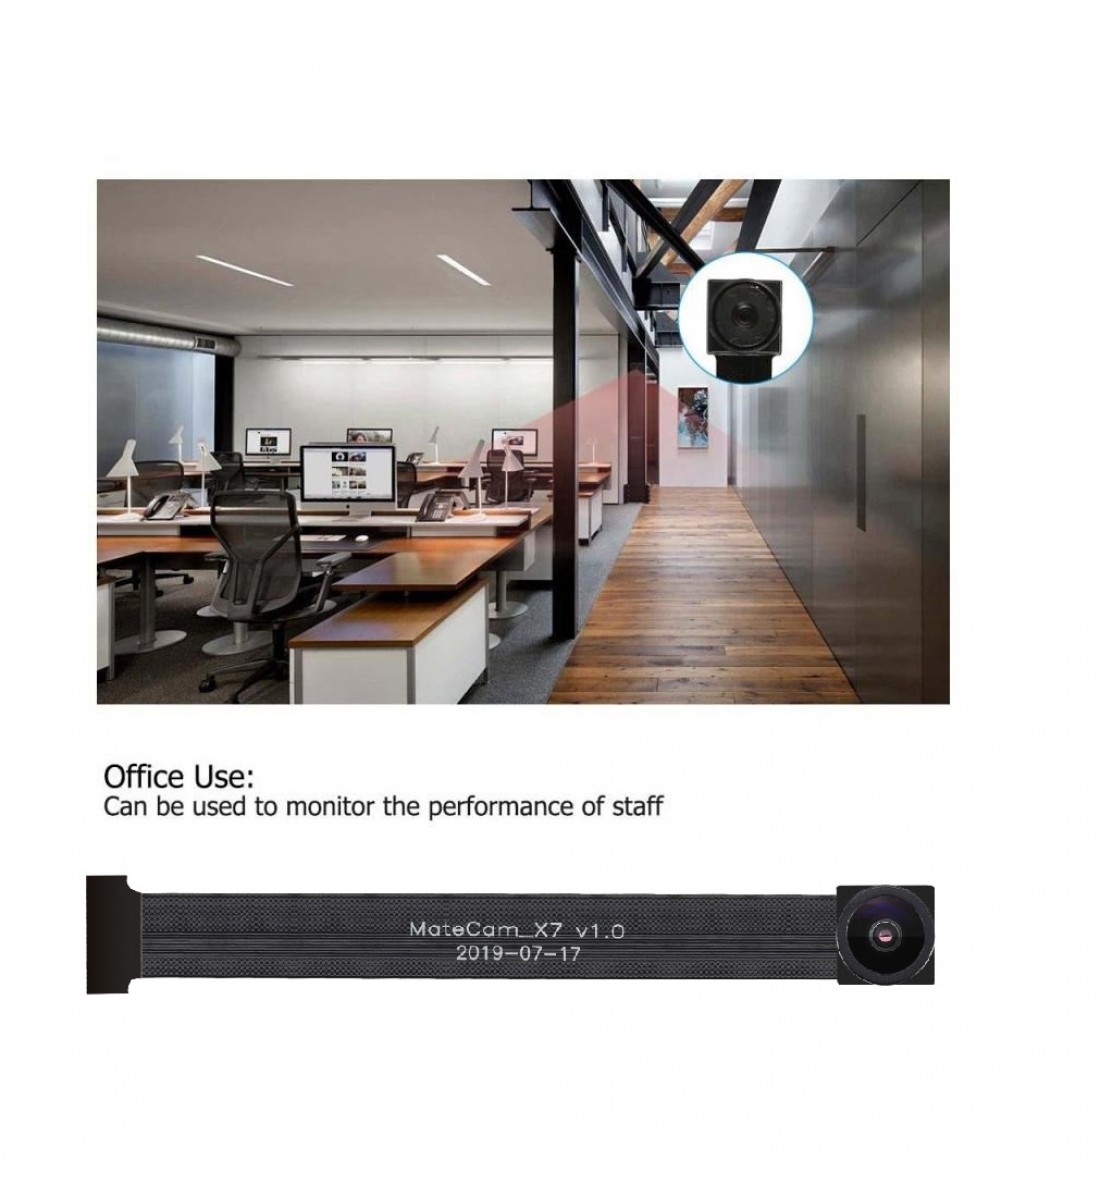 Espía, detector de cámara oculta, cámara WiFi 1080P para seguridad de  oficina en casa, cámara interior con detección de movimiento, visión  nocturna